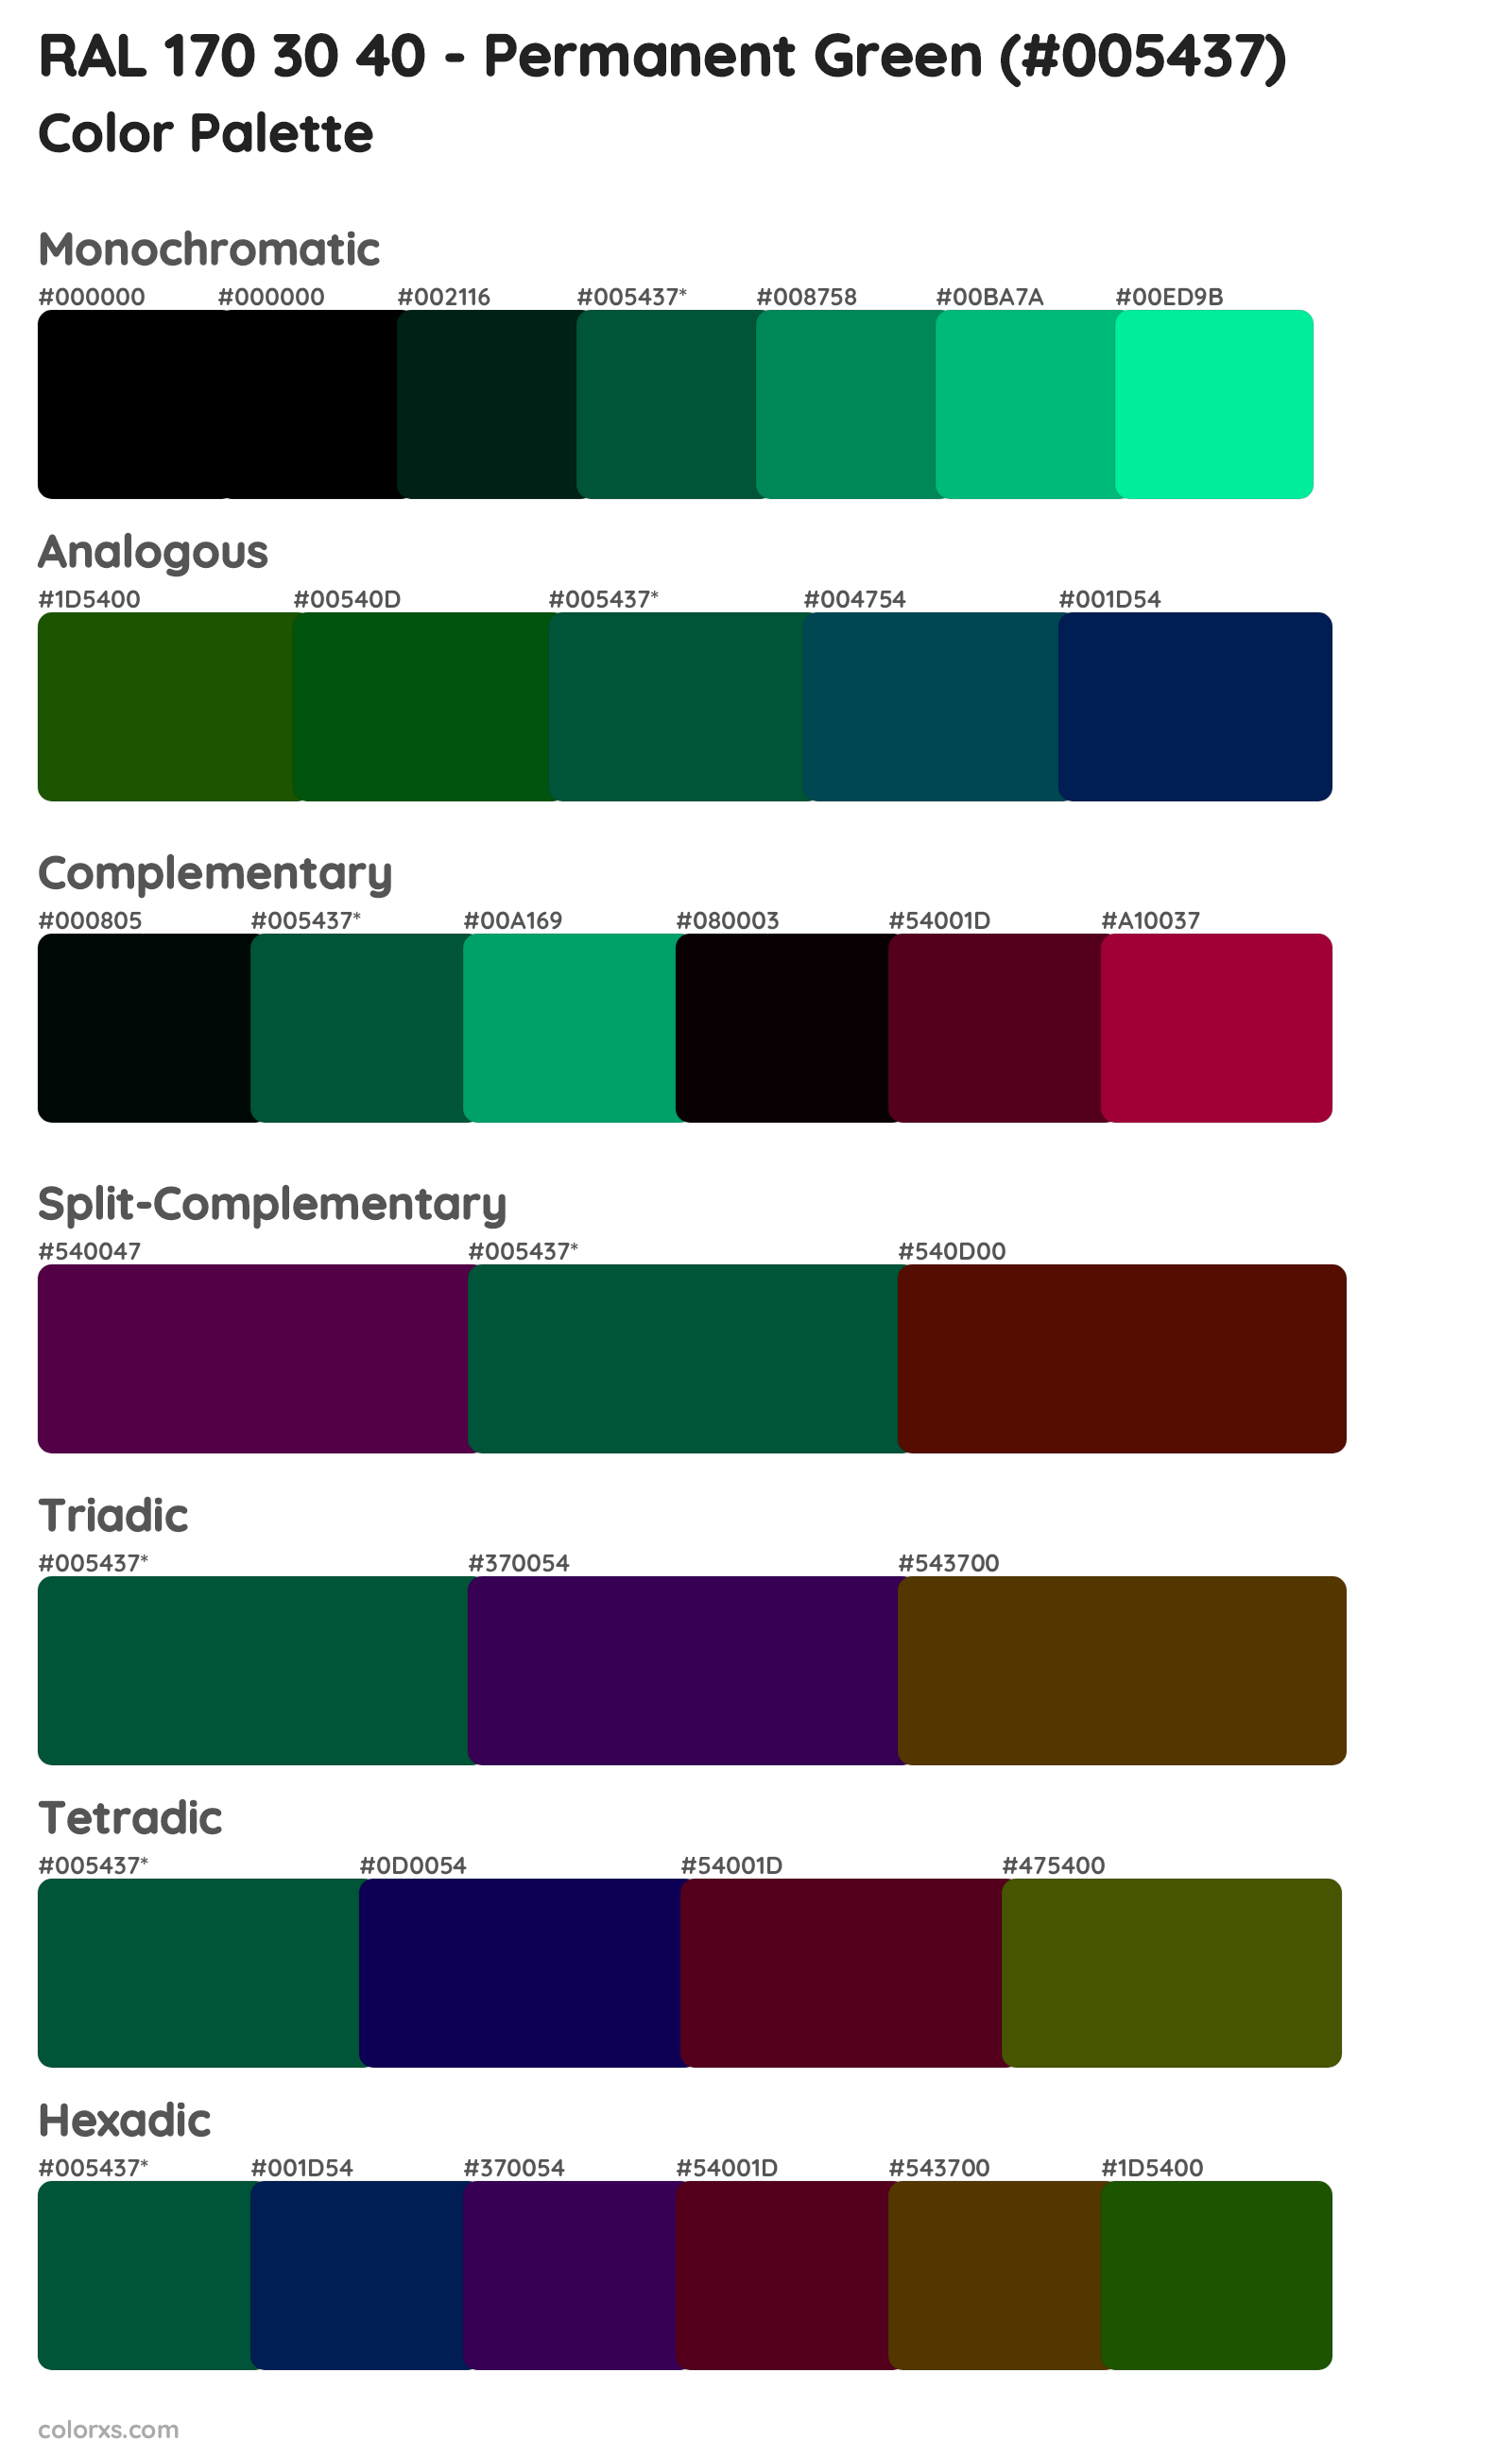 RAL 170 30 40 - Permanent Green Color Scheme Palettes